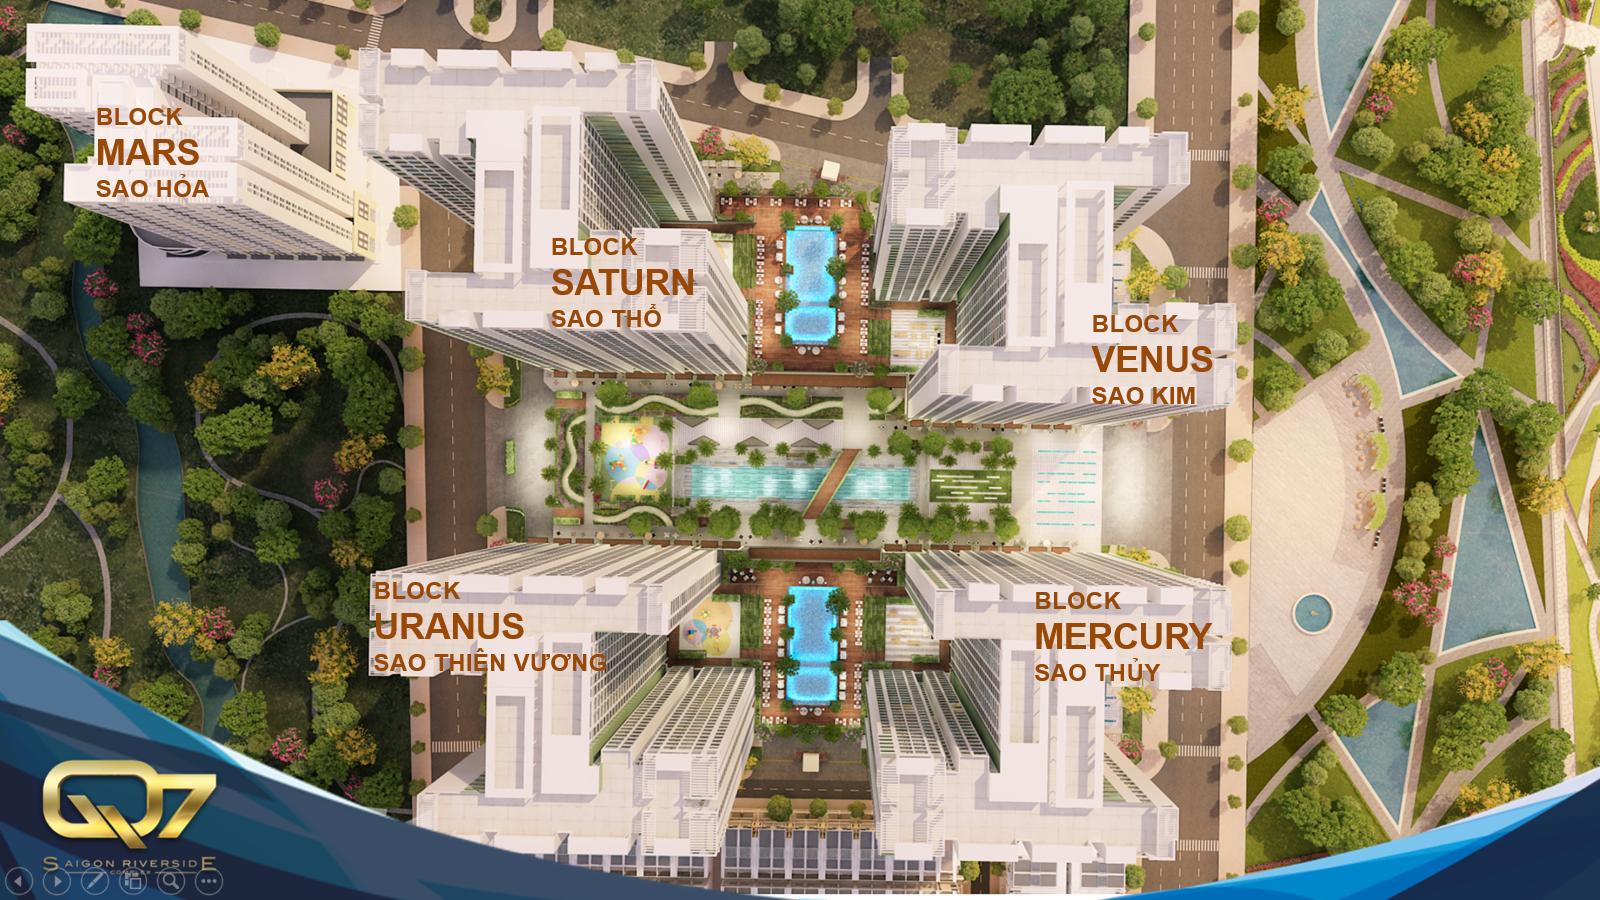 Mặt bằng quy hoạch Q7 Saigon Riverside Complex